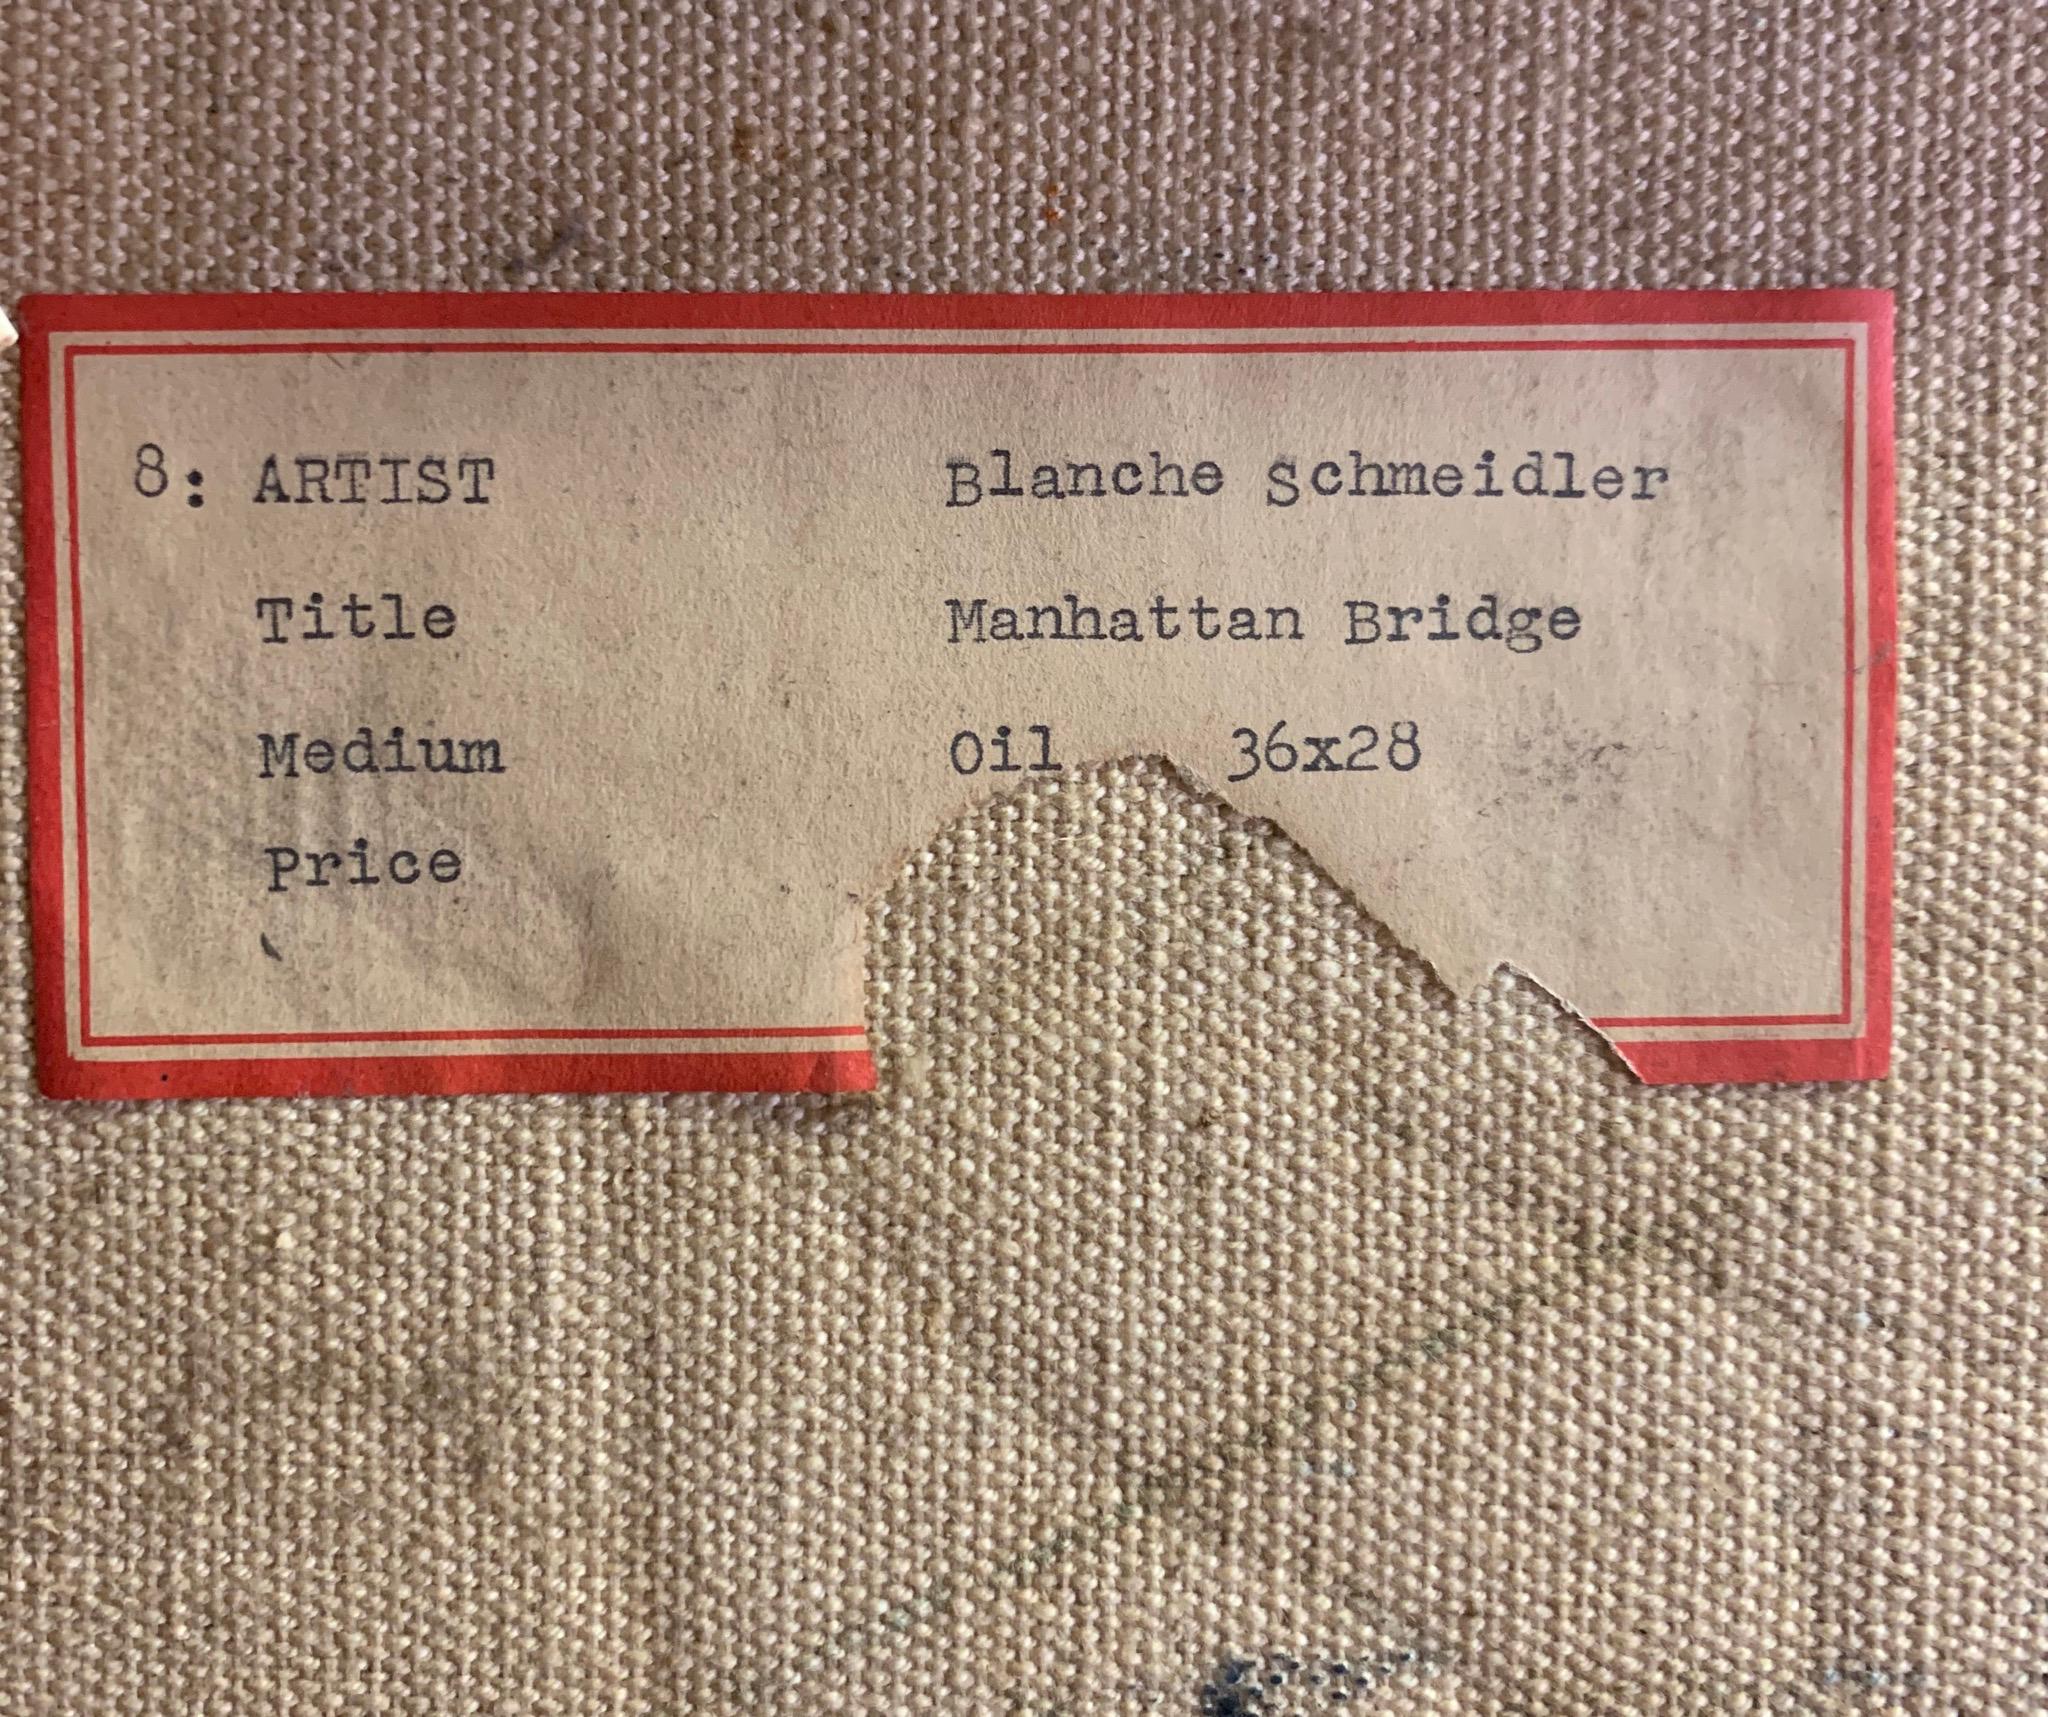 Die amerikanische abstrakt-modernistische Malerin Blanche Schmeidler (geb. 1915) zeigt eine Ansicht der Skyline von New York City mit der Manhattan Bridge... gemalt in den 1950er Jahren mit wunderbaren Farbpaletten in kräftigen Rottönen.  Gemälde